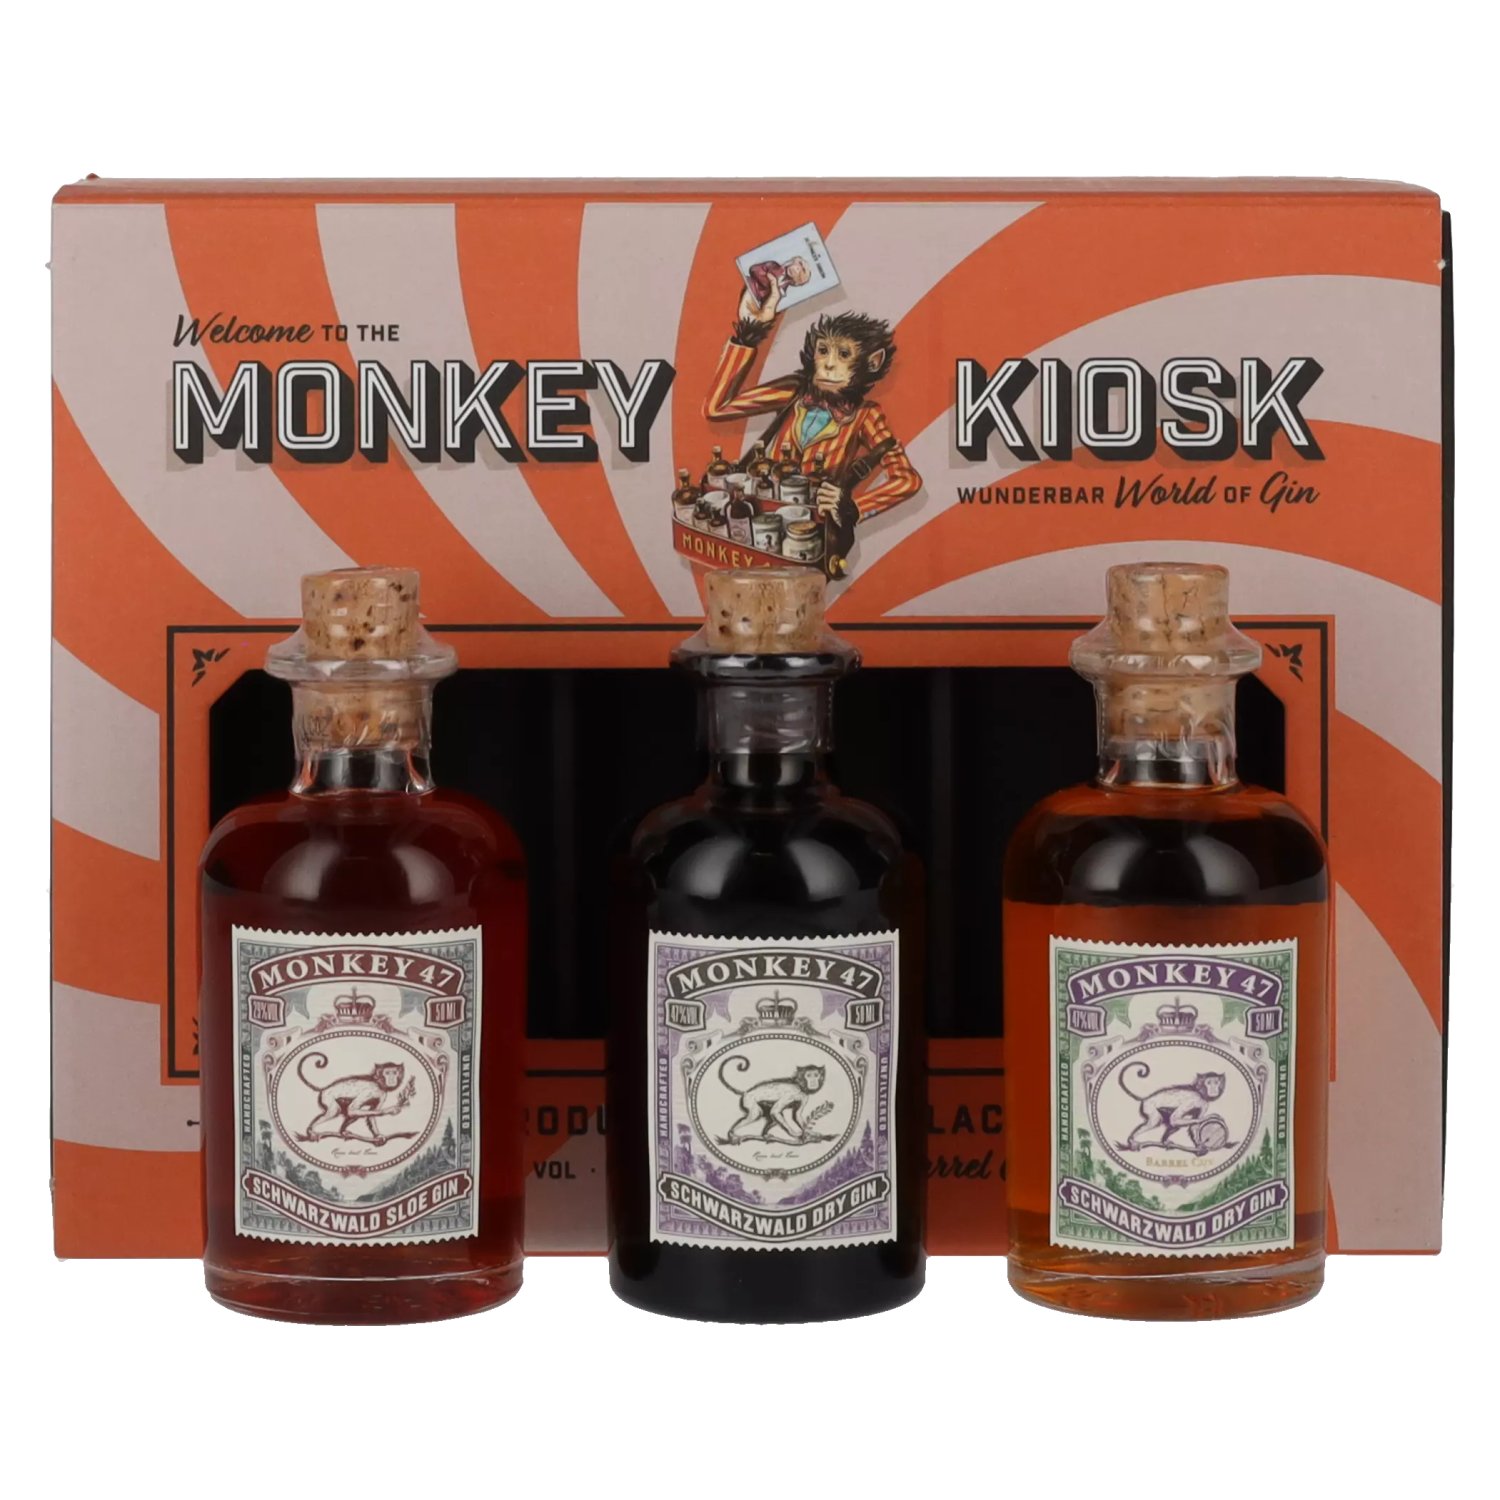 Monkey 47 Kiosk in Vol. 3x0,05l Giftbox 41% Set